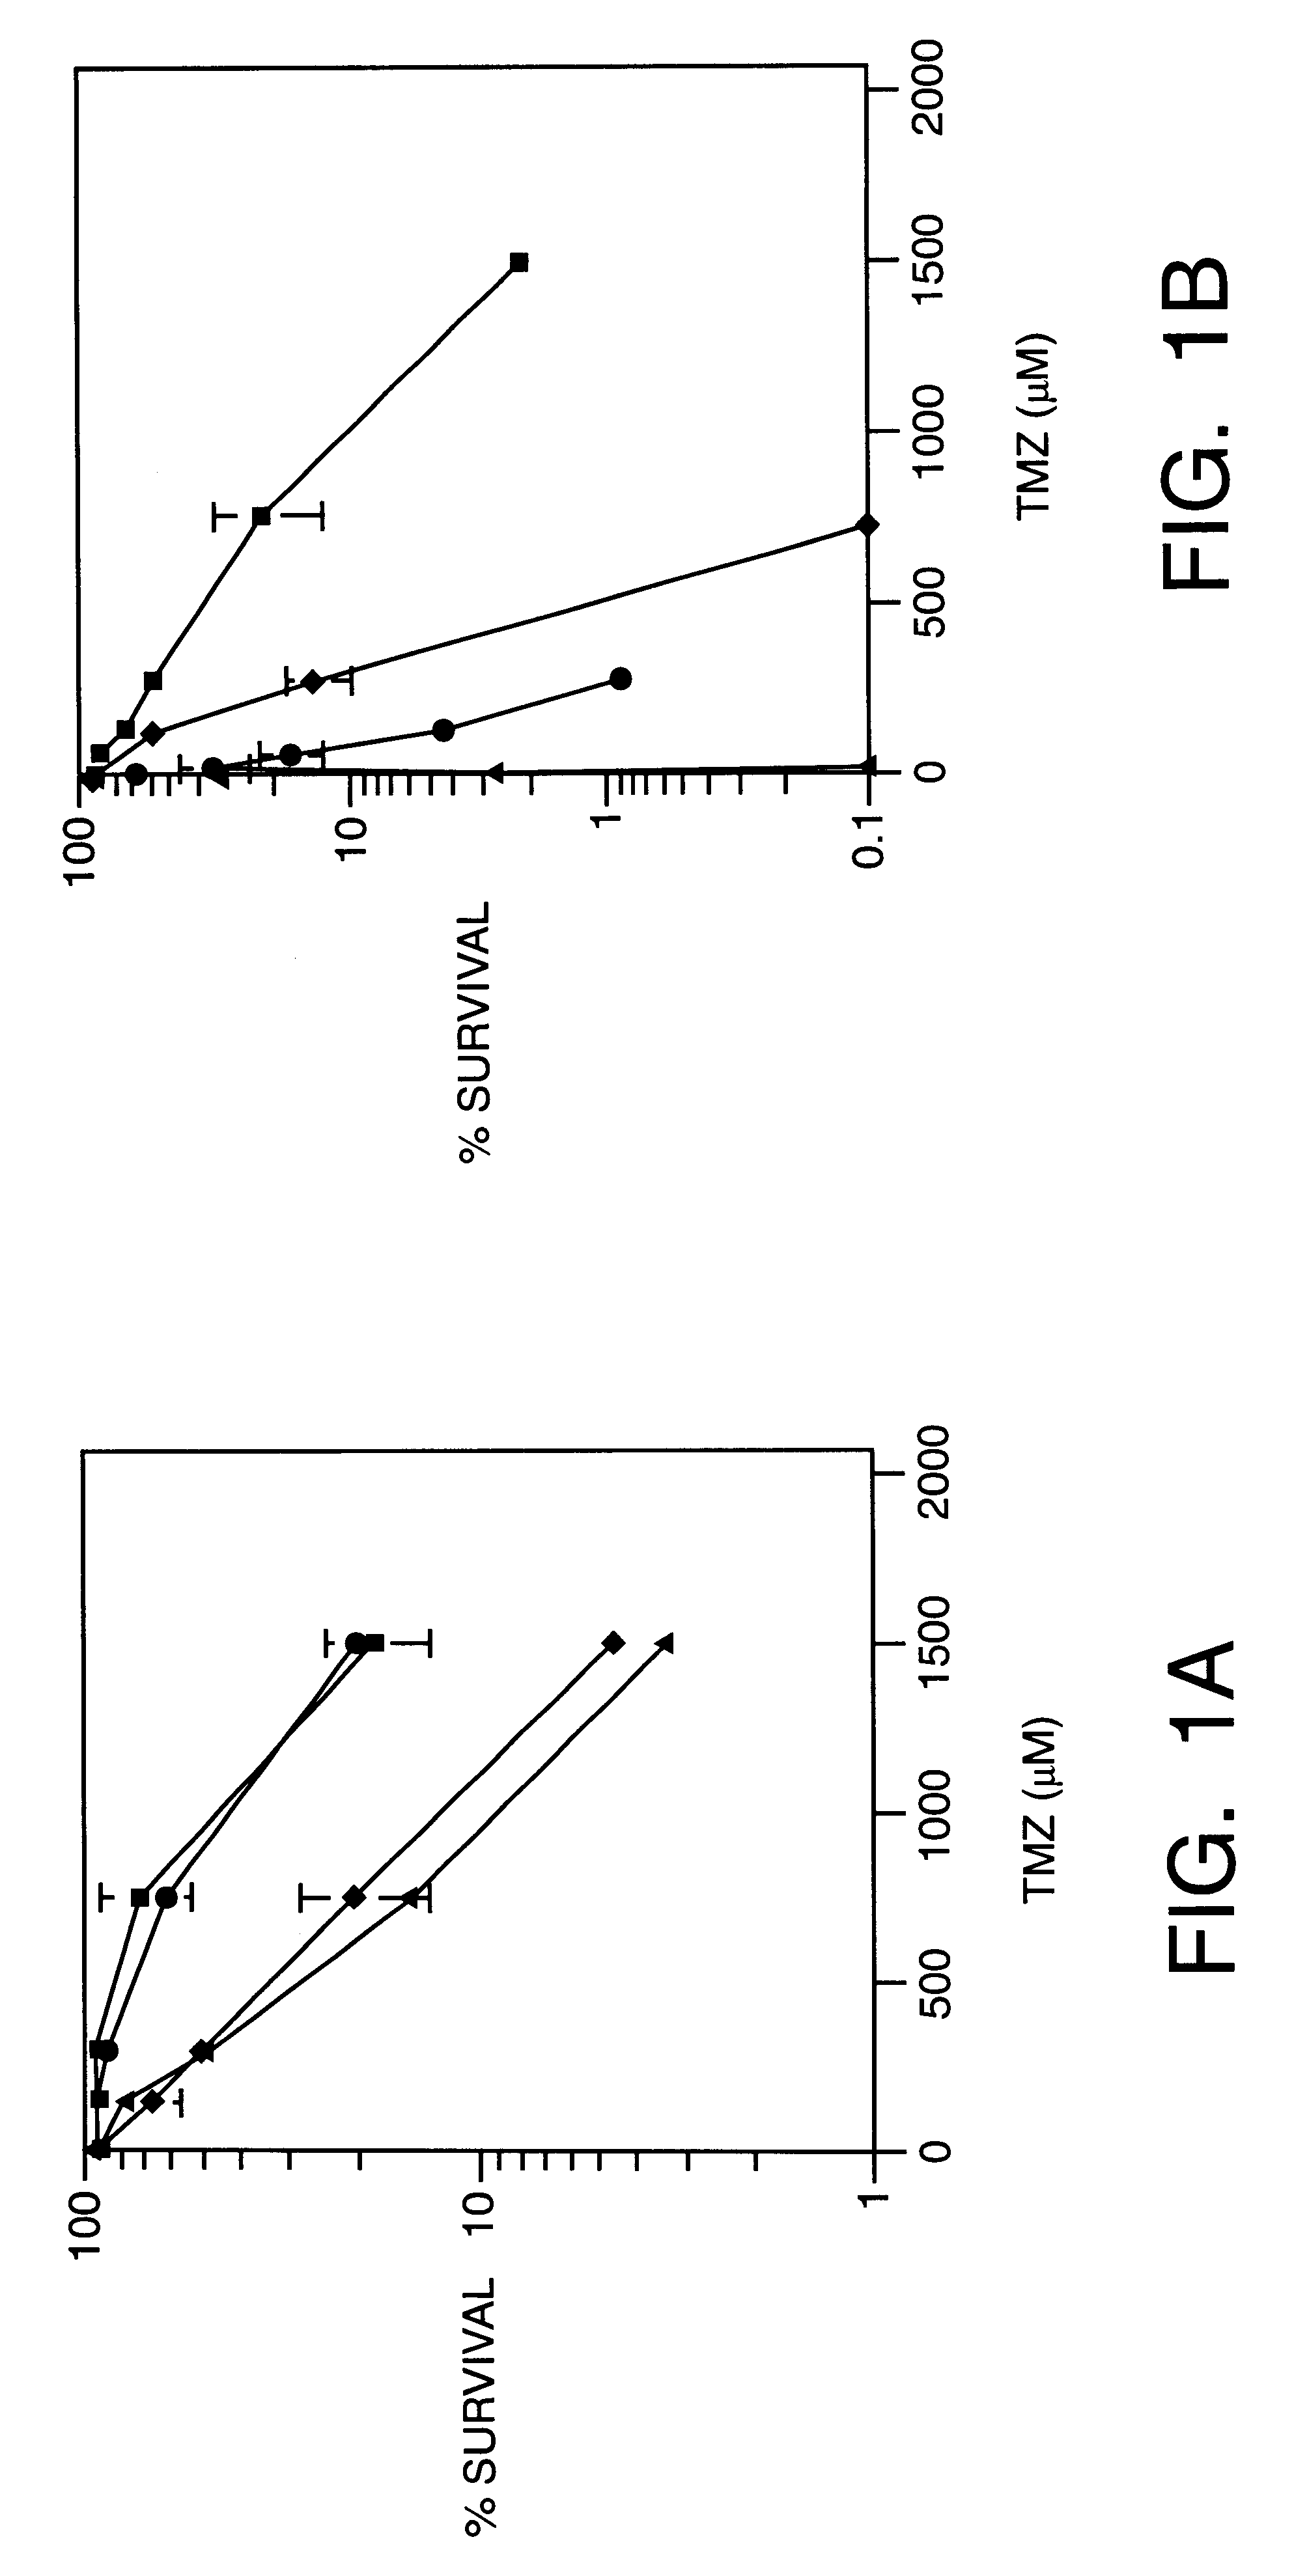 Methoxyamine potentiation of temozolomide anti-cancer activity